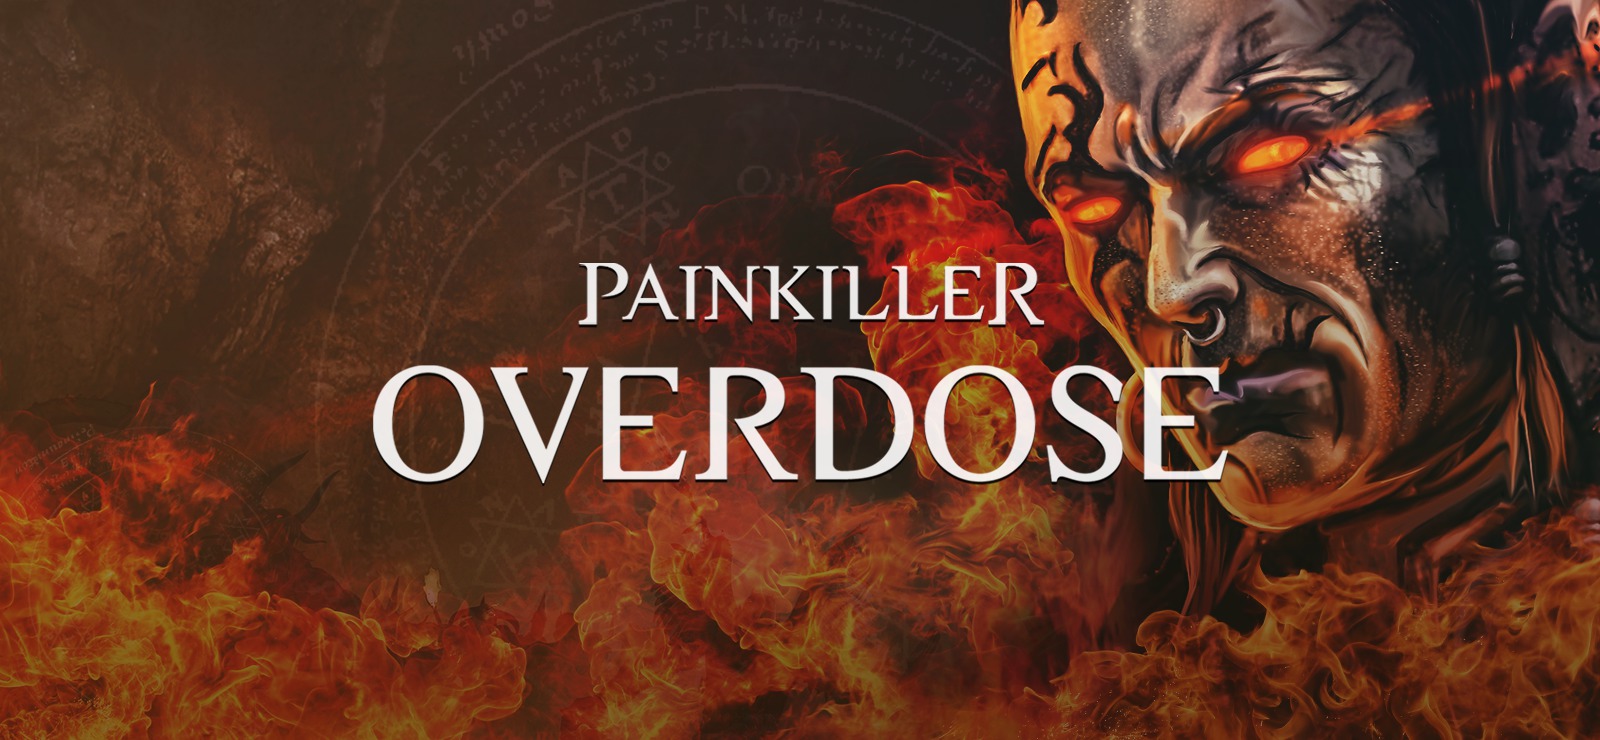 Giochi Horror: Painkiller Overdose